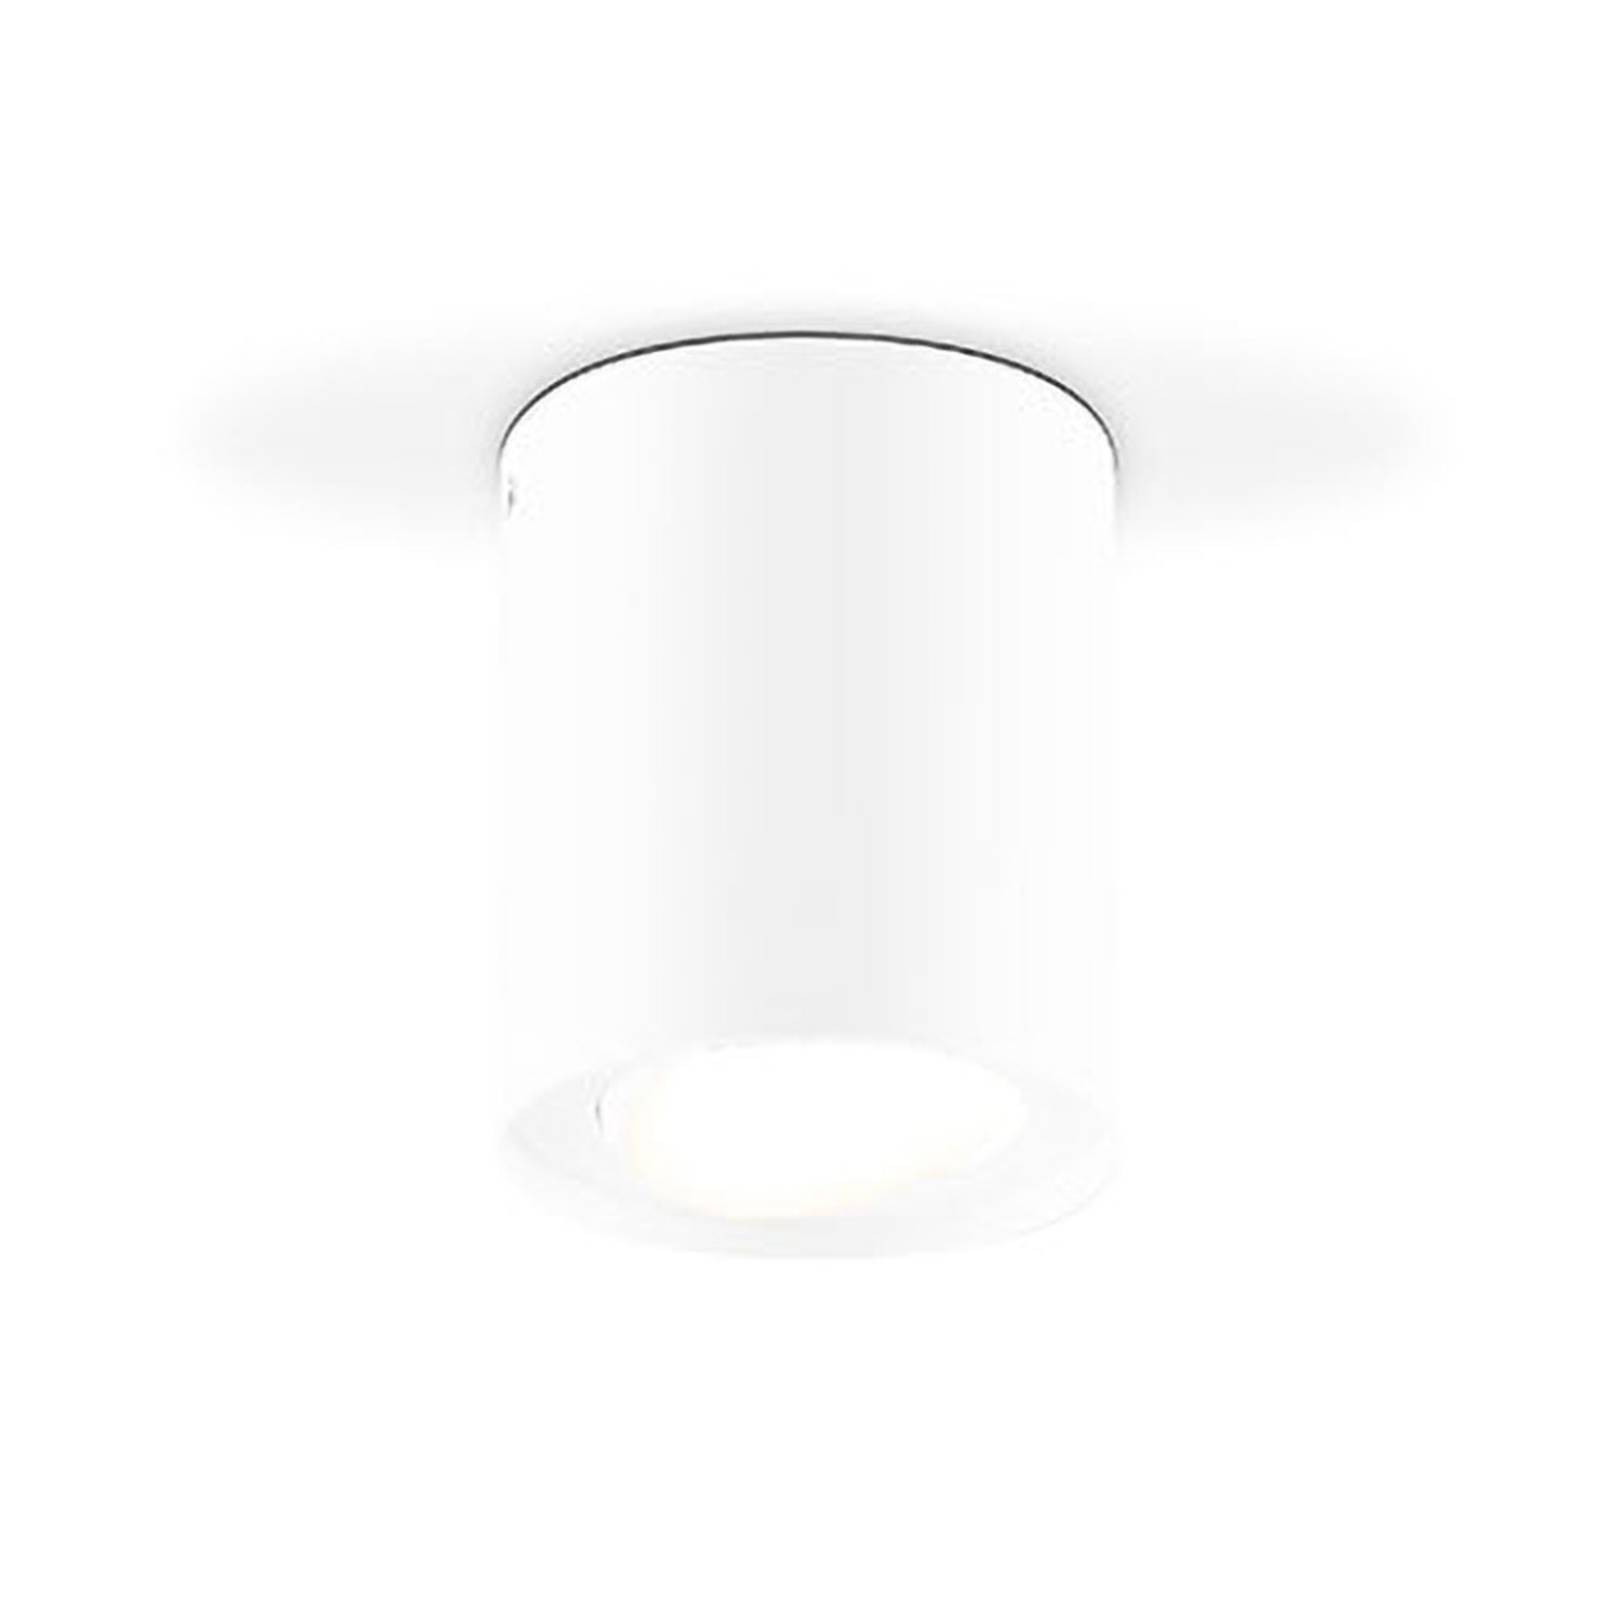 EVN Kardanus plafonnier LED, Ø 9 cm, blanc